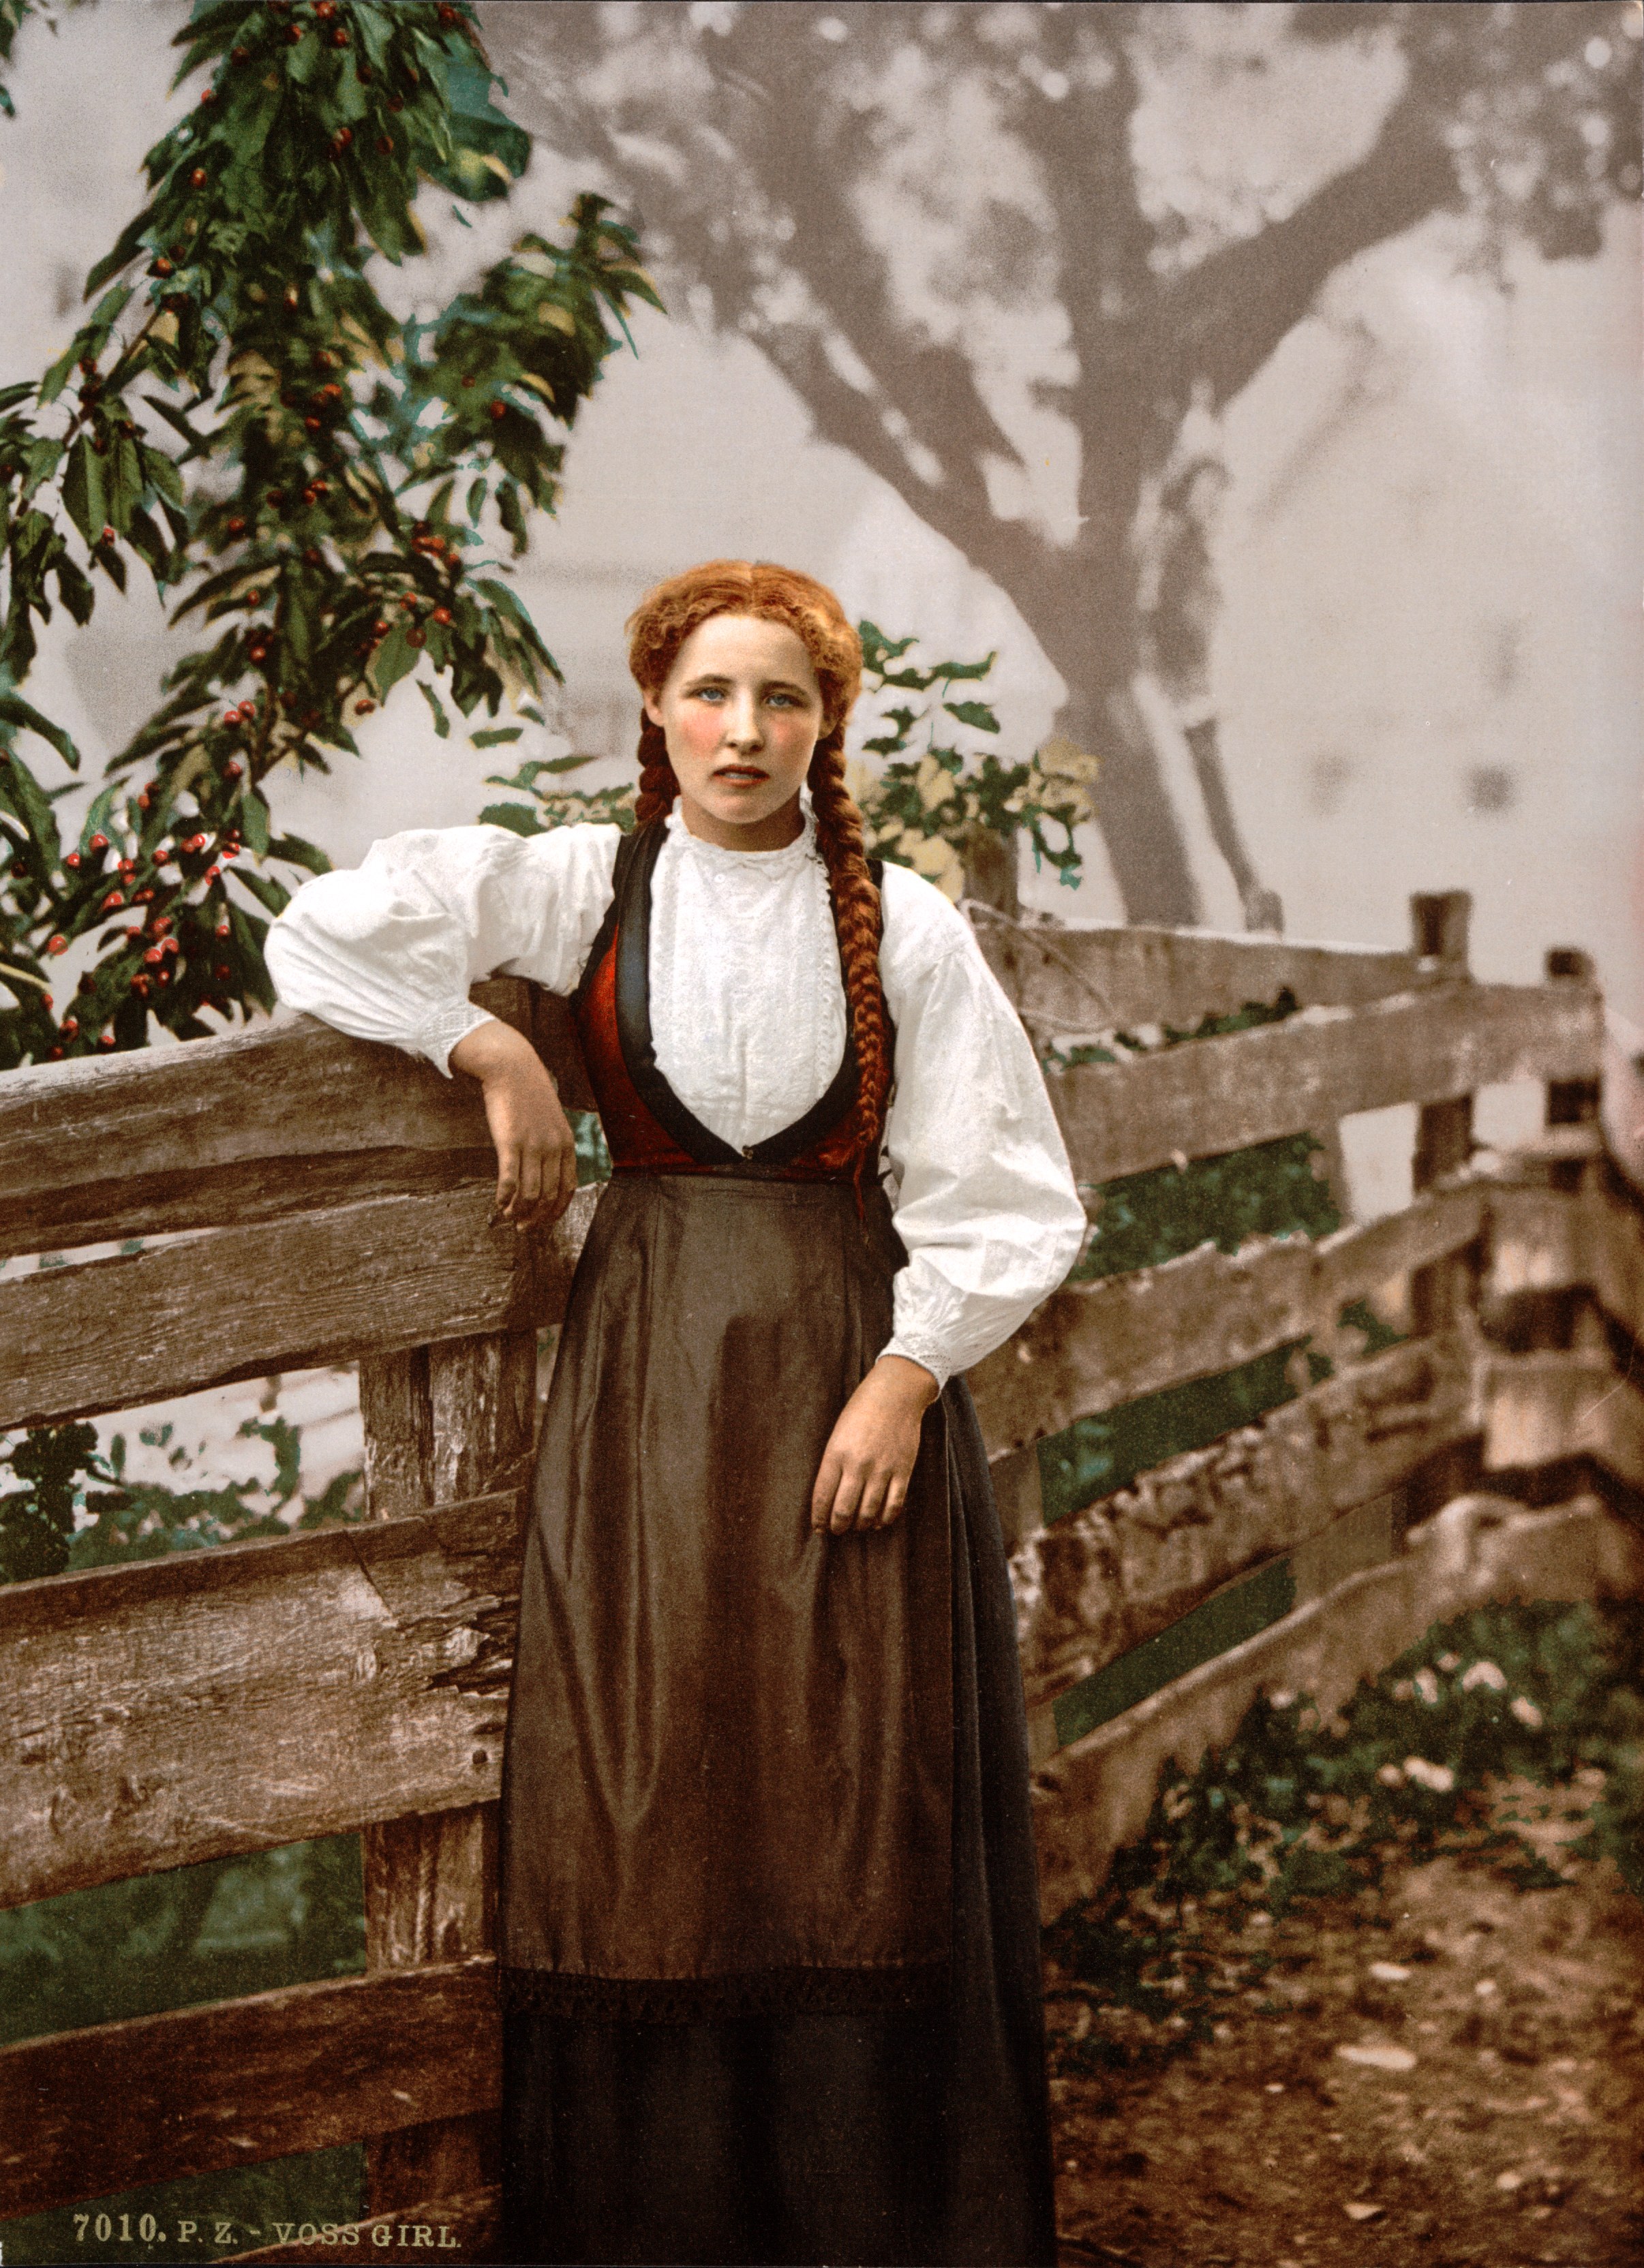 Voss-girl-photochrom-1900